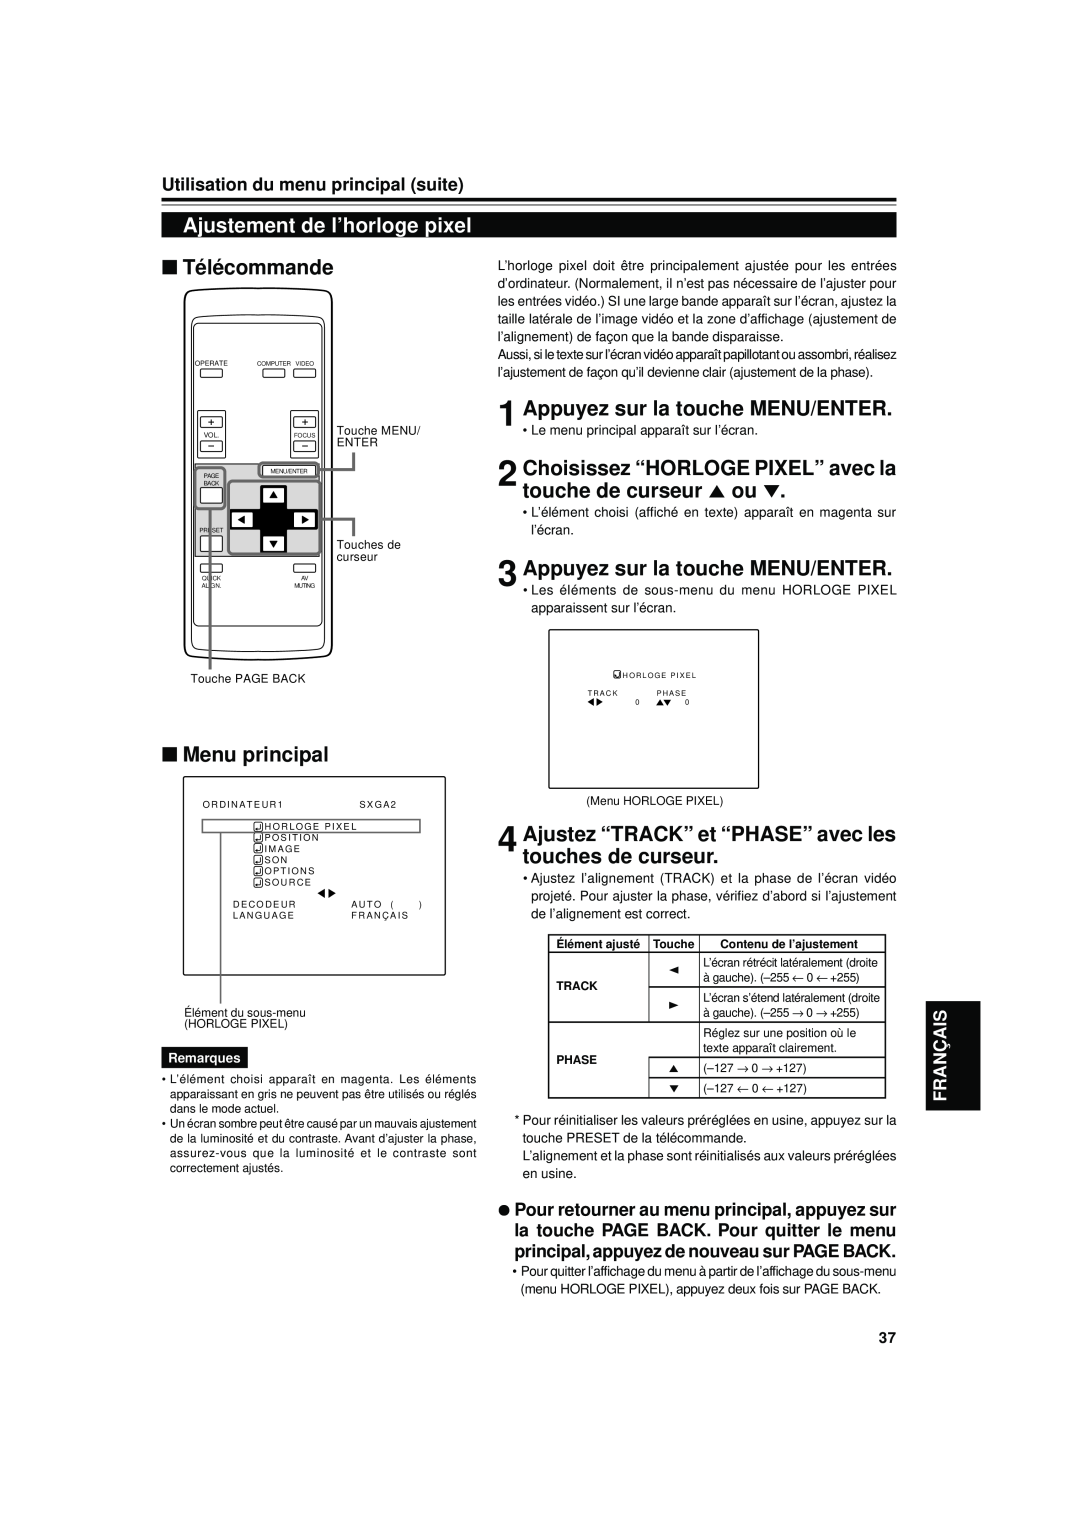 JVC DLA-S15U manual Ajustement de l’horloge pixel, Choisissez “HORLOGE PIXEL” avec la touche de curseur 5 ou, Télécommande 